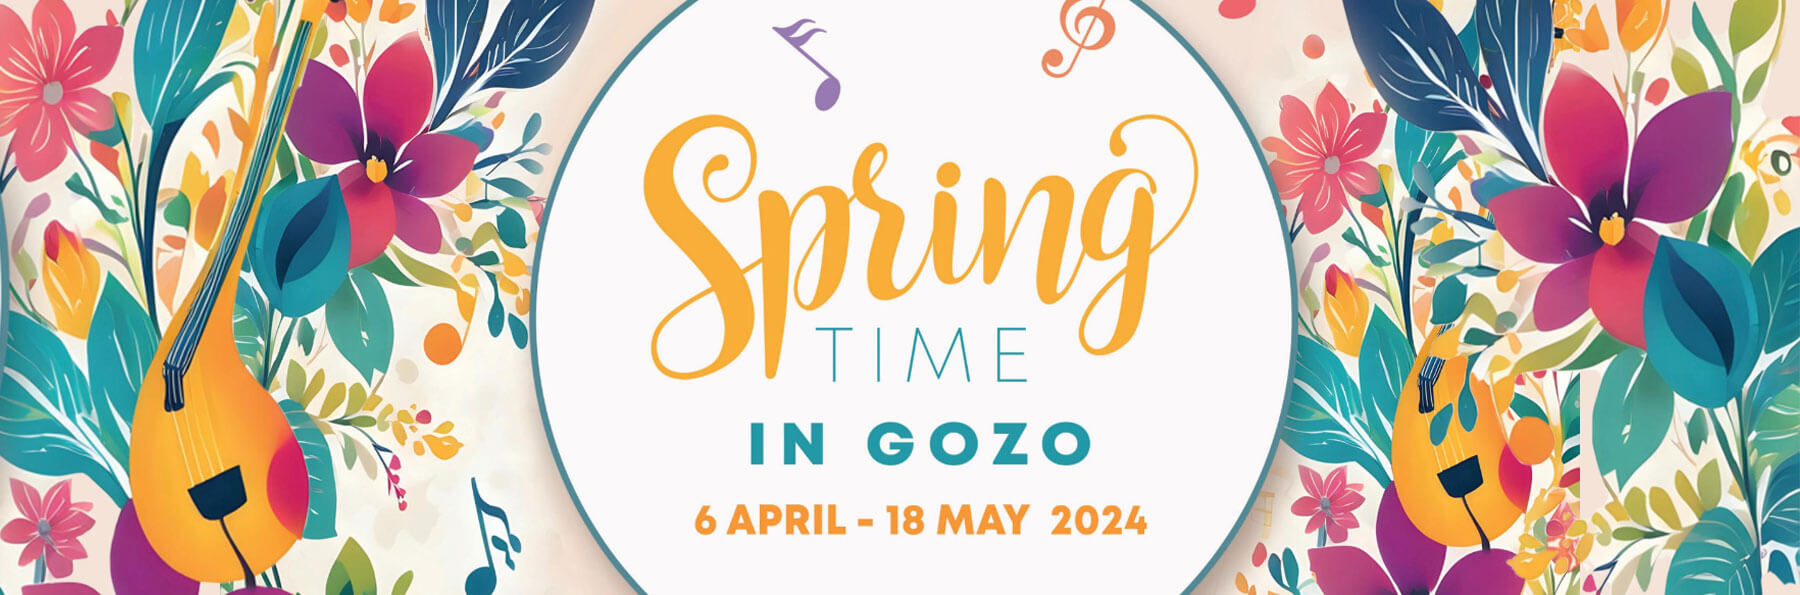 Springtime in Gozo 2024